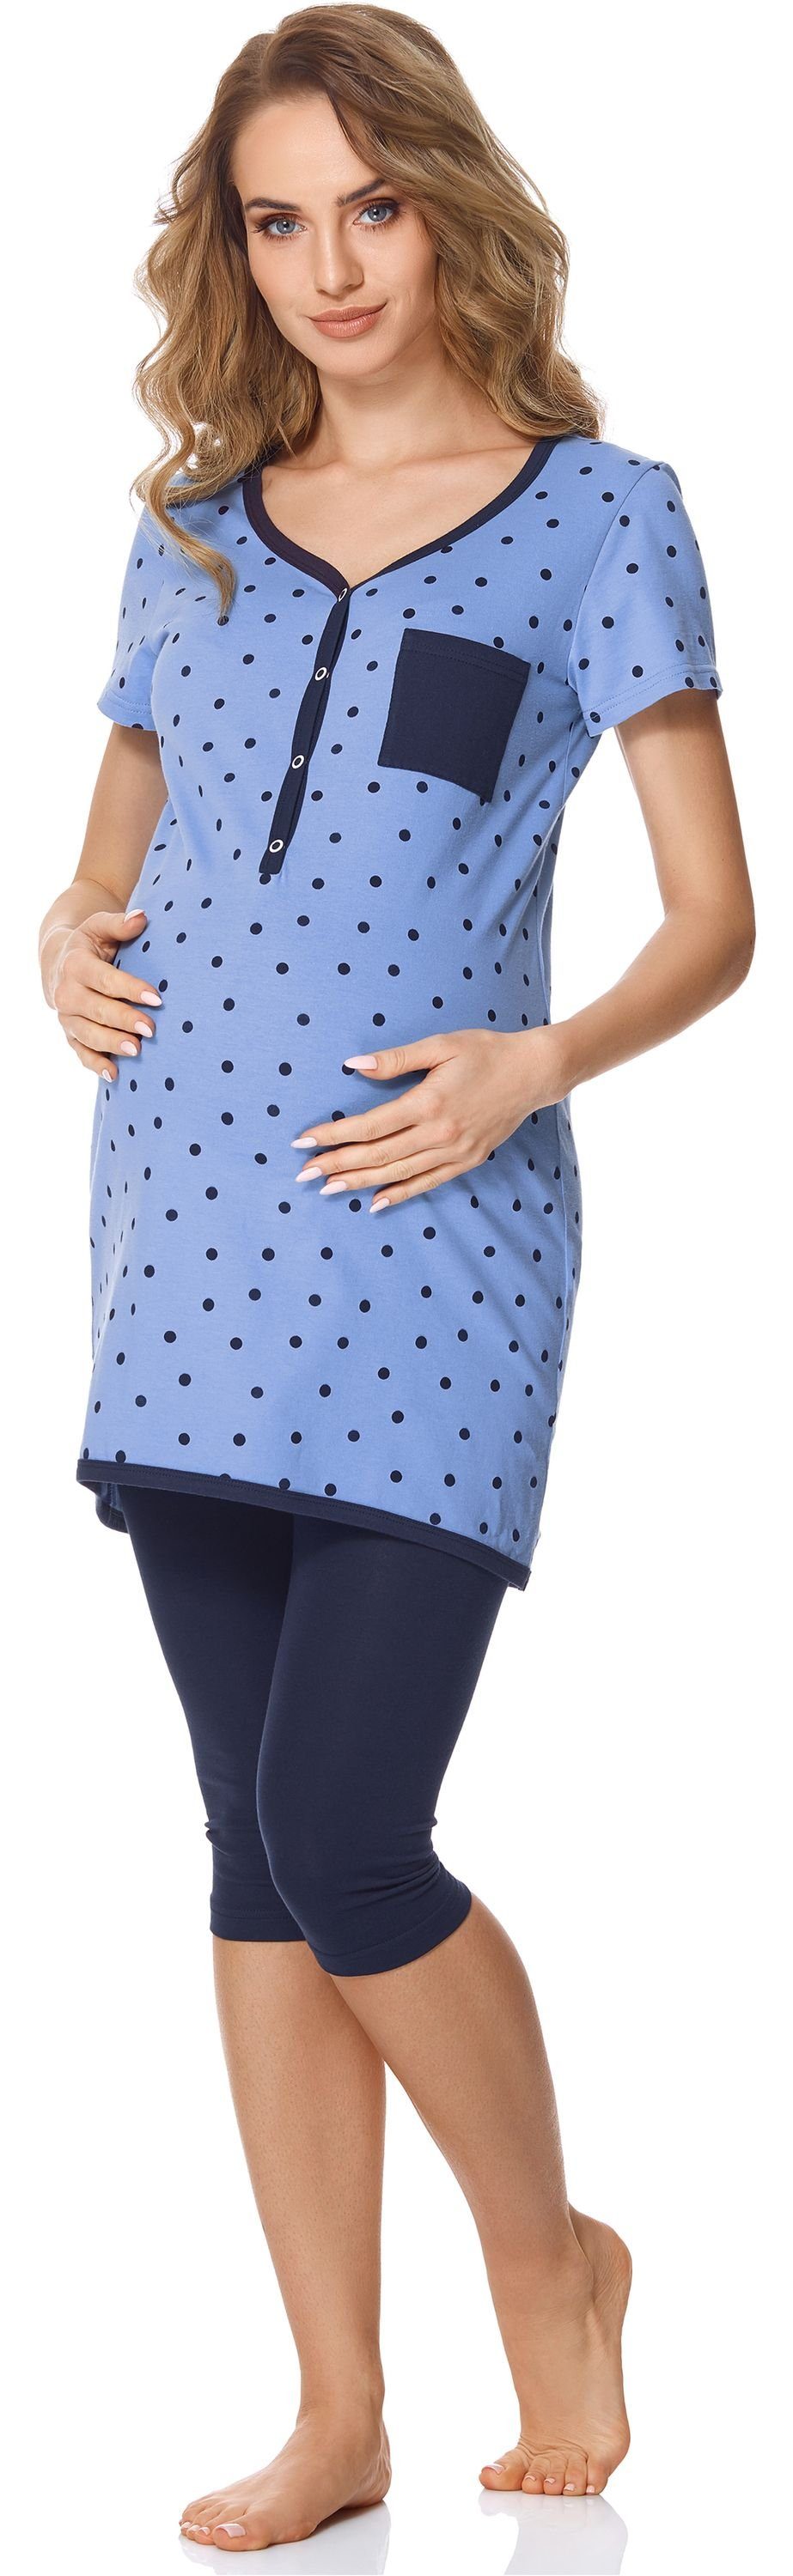 Stillfunktion Brusttasche mit mit Bellivalini Damen Umstands BLV50-126 Umstandspyjama Punkte/Marineblau Pyjama Blau